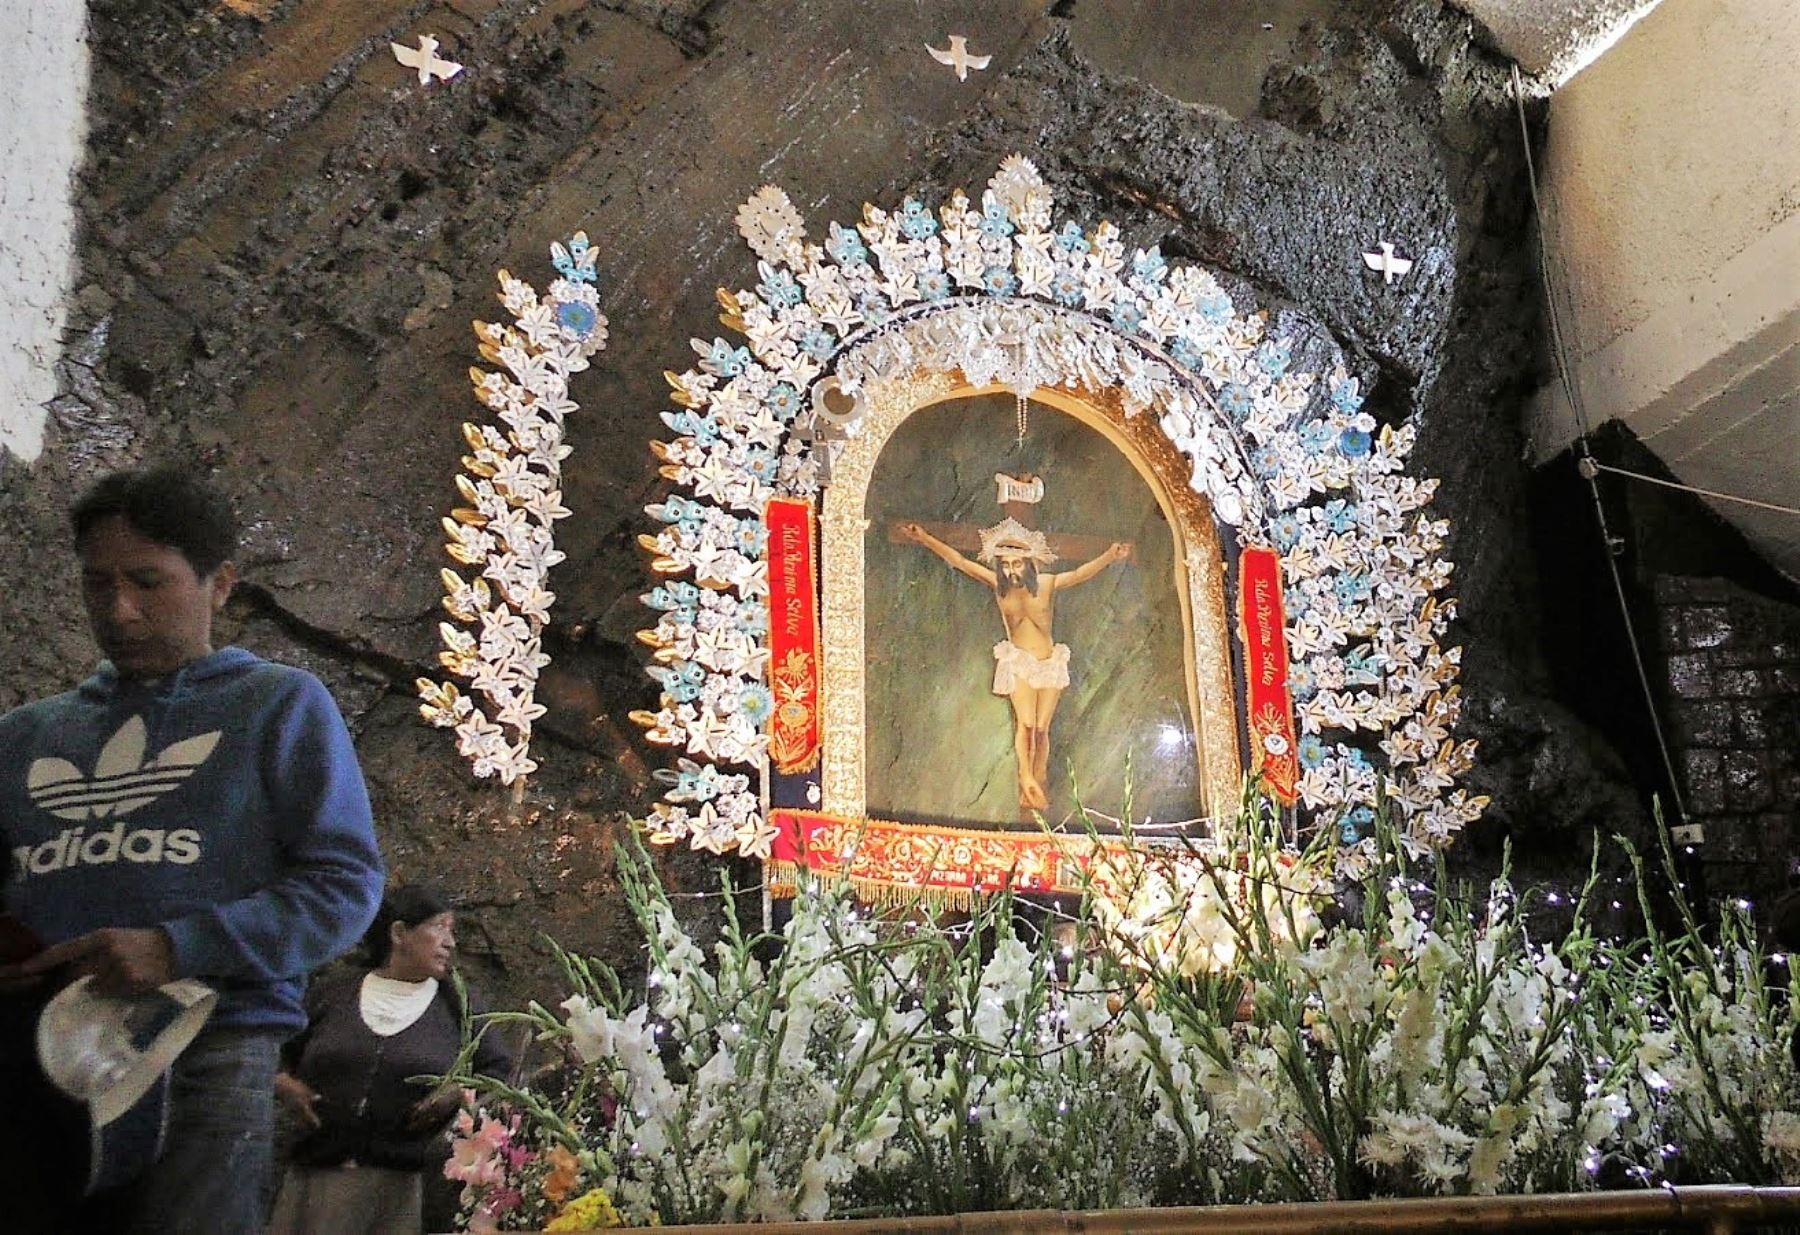 Festividad del Señor de Muruhuay se celebra en distrito de Acobamba, provincia de Tarma. Foto: Internet